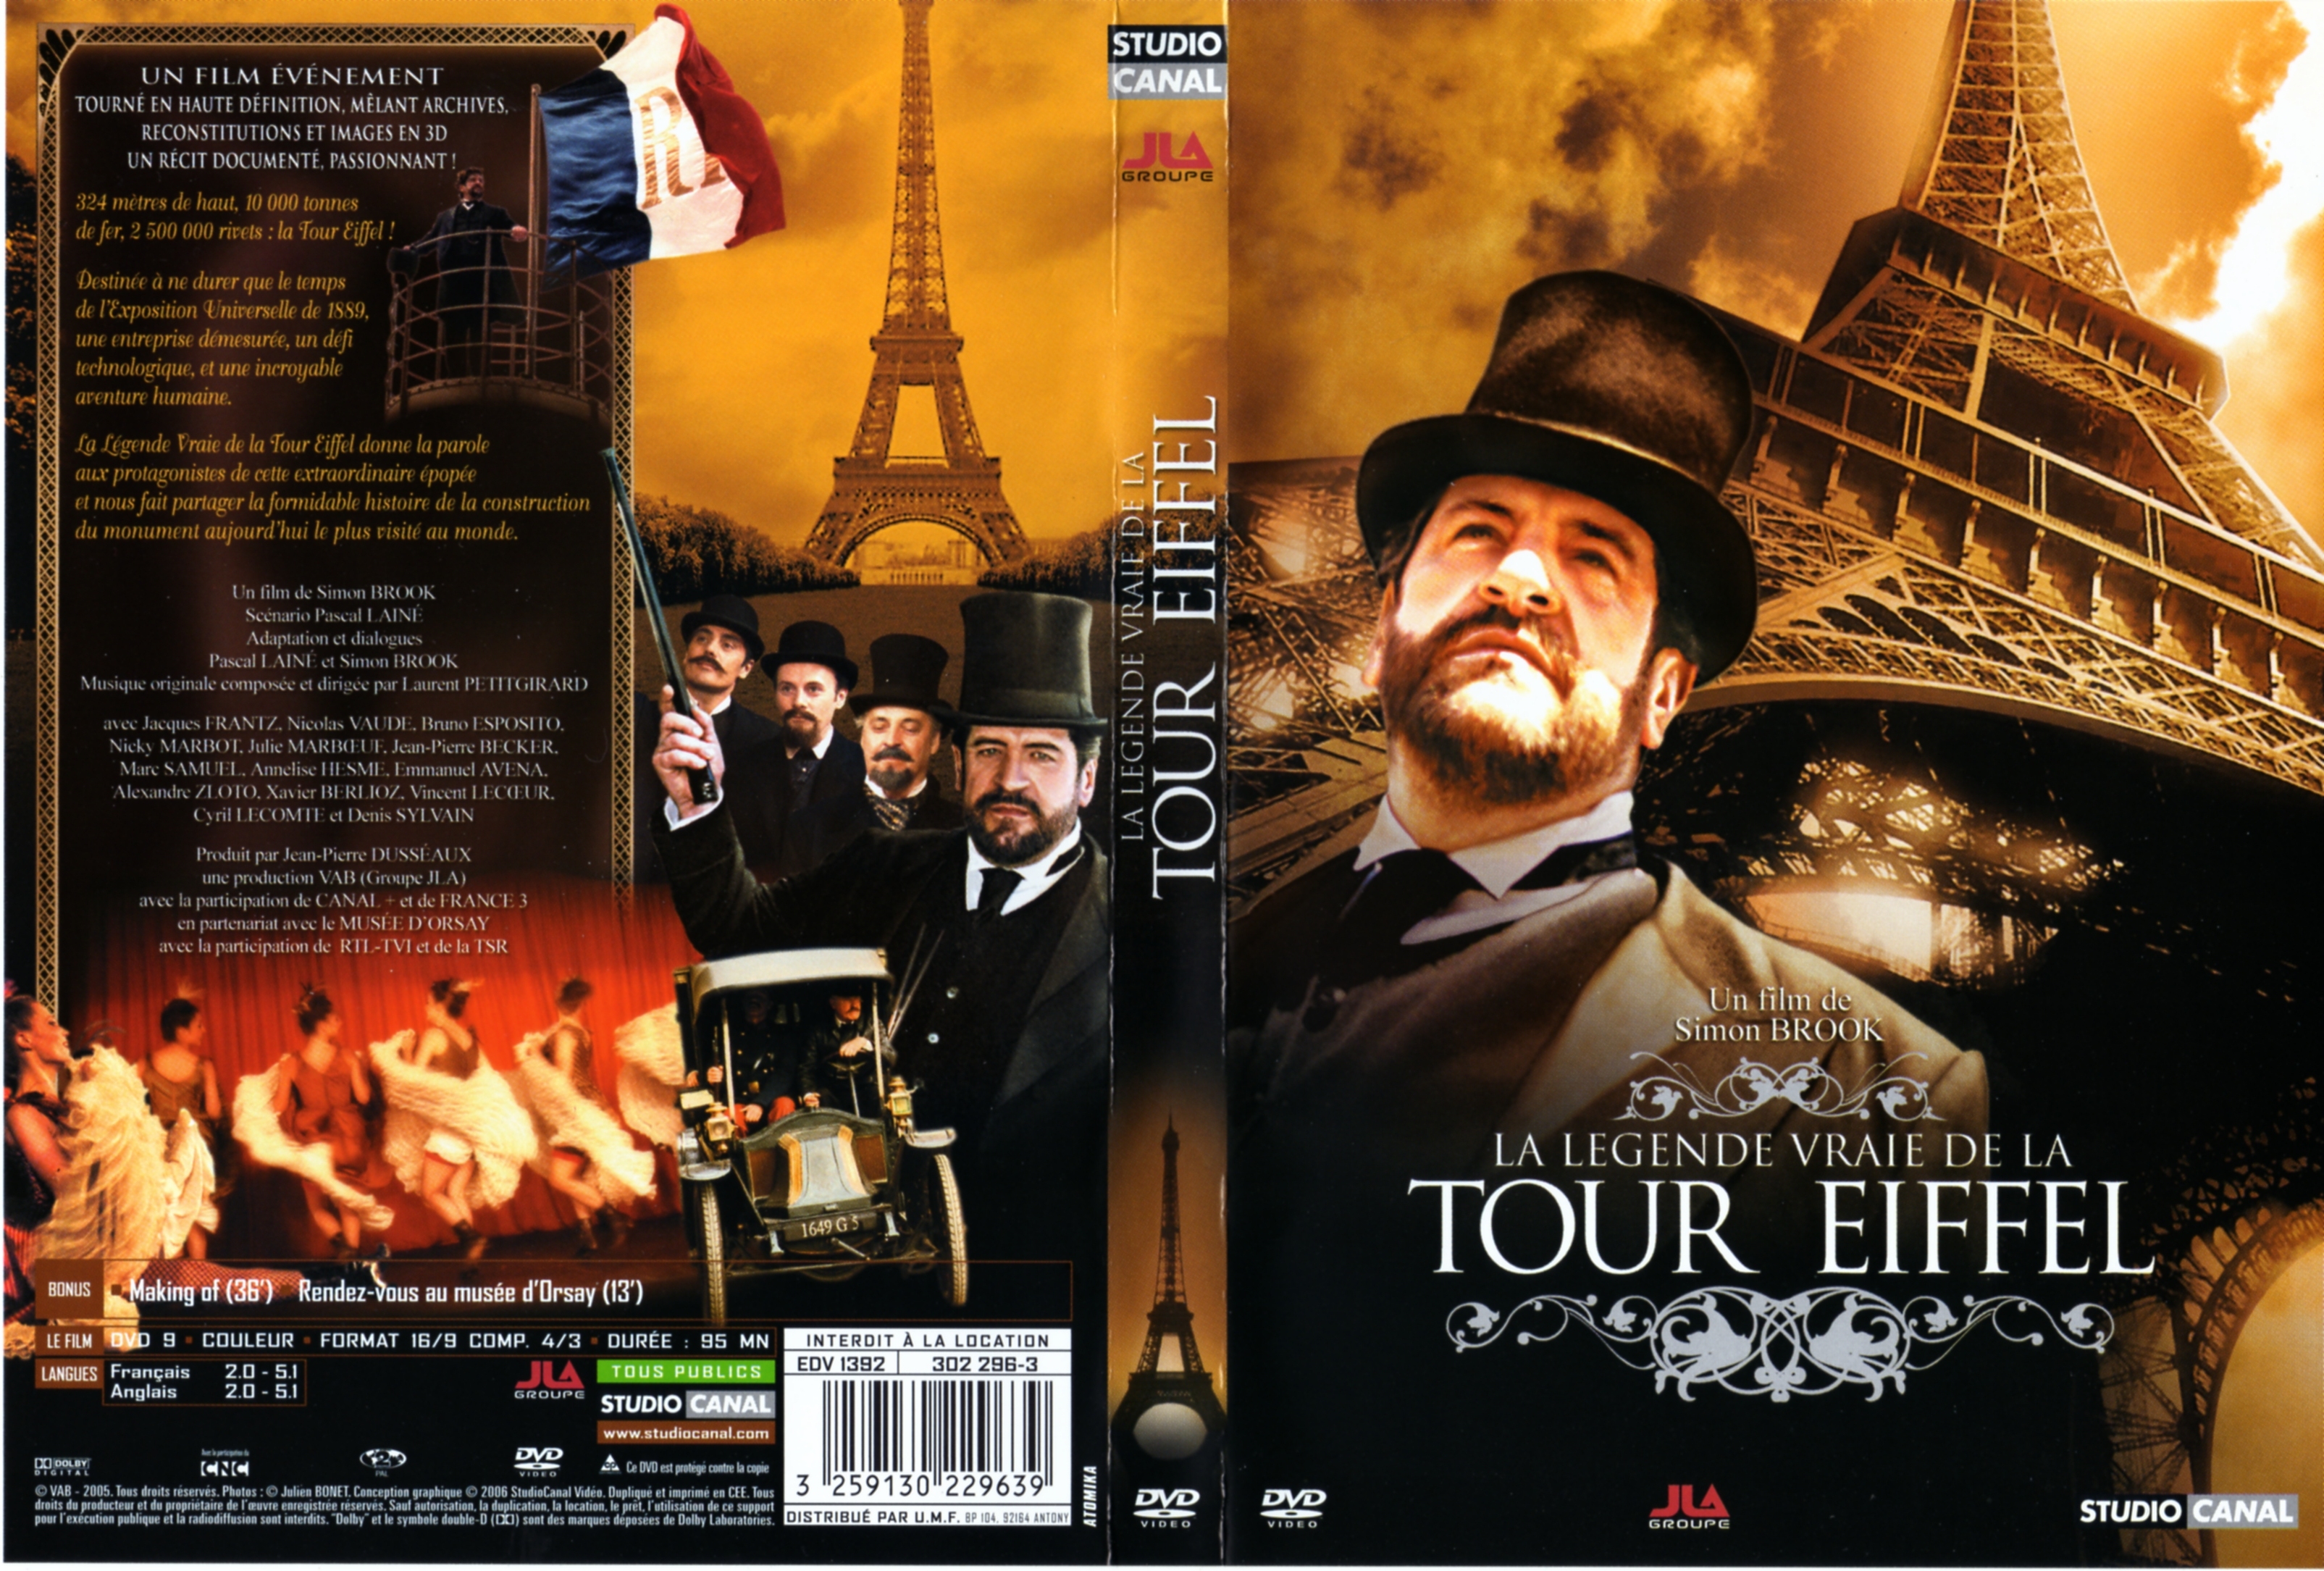 Jaquette DVD La lgende vraie de la Tour Eiffel